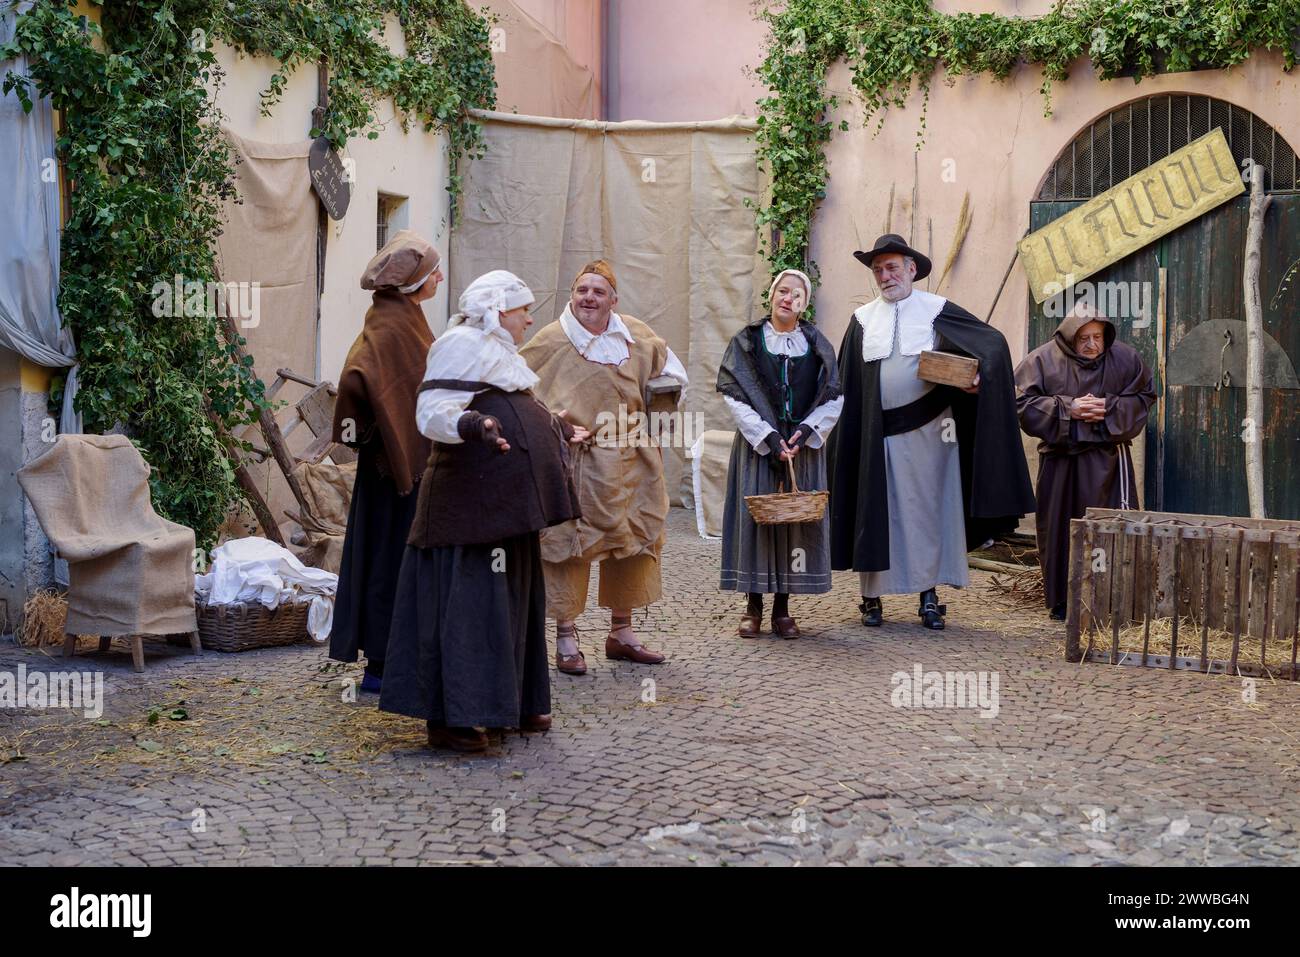 Rievocazione storica nel centro storico di Taggia, in Liguria Foto Stock